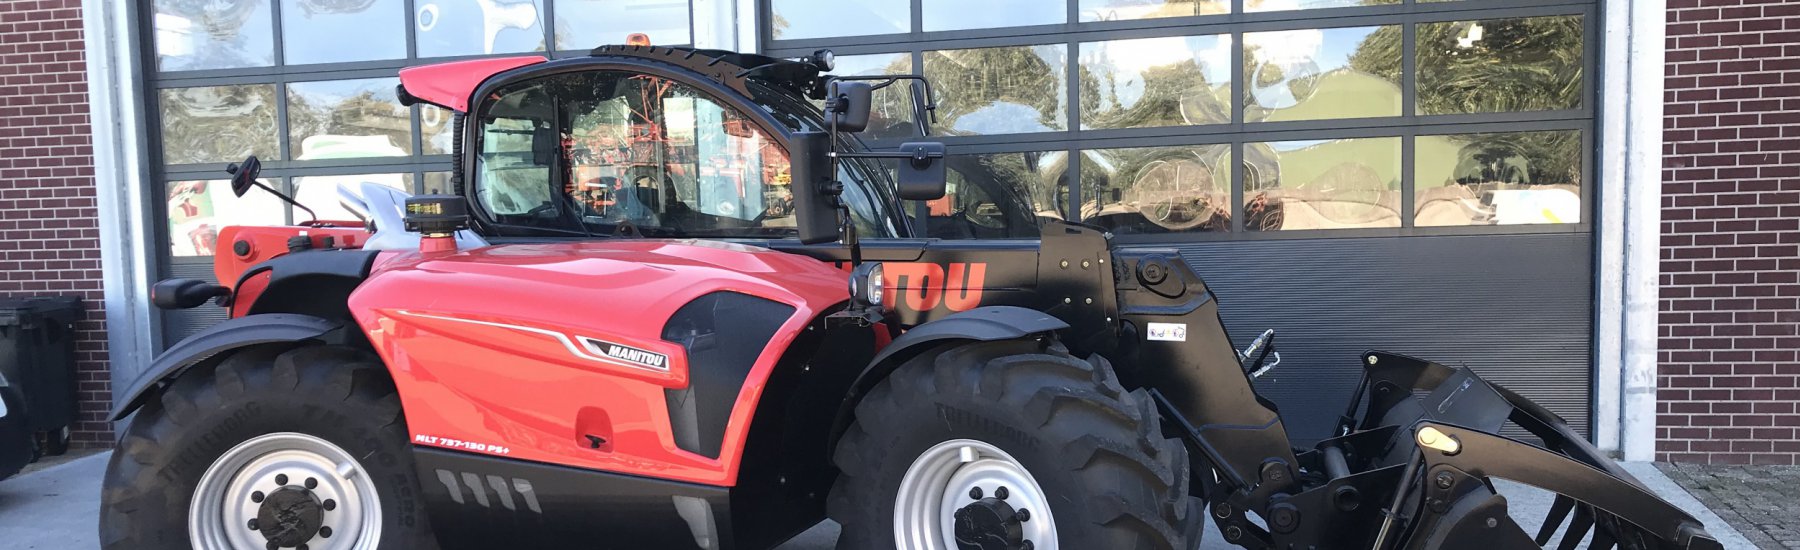 Klaarmaken van nieuw verkochte Massey Ferguson tractoren